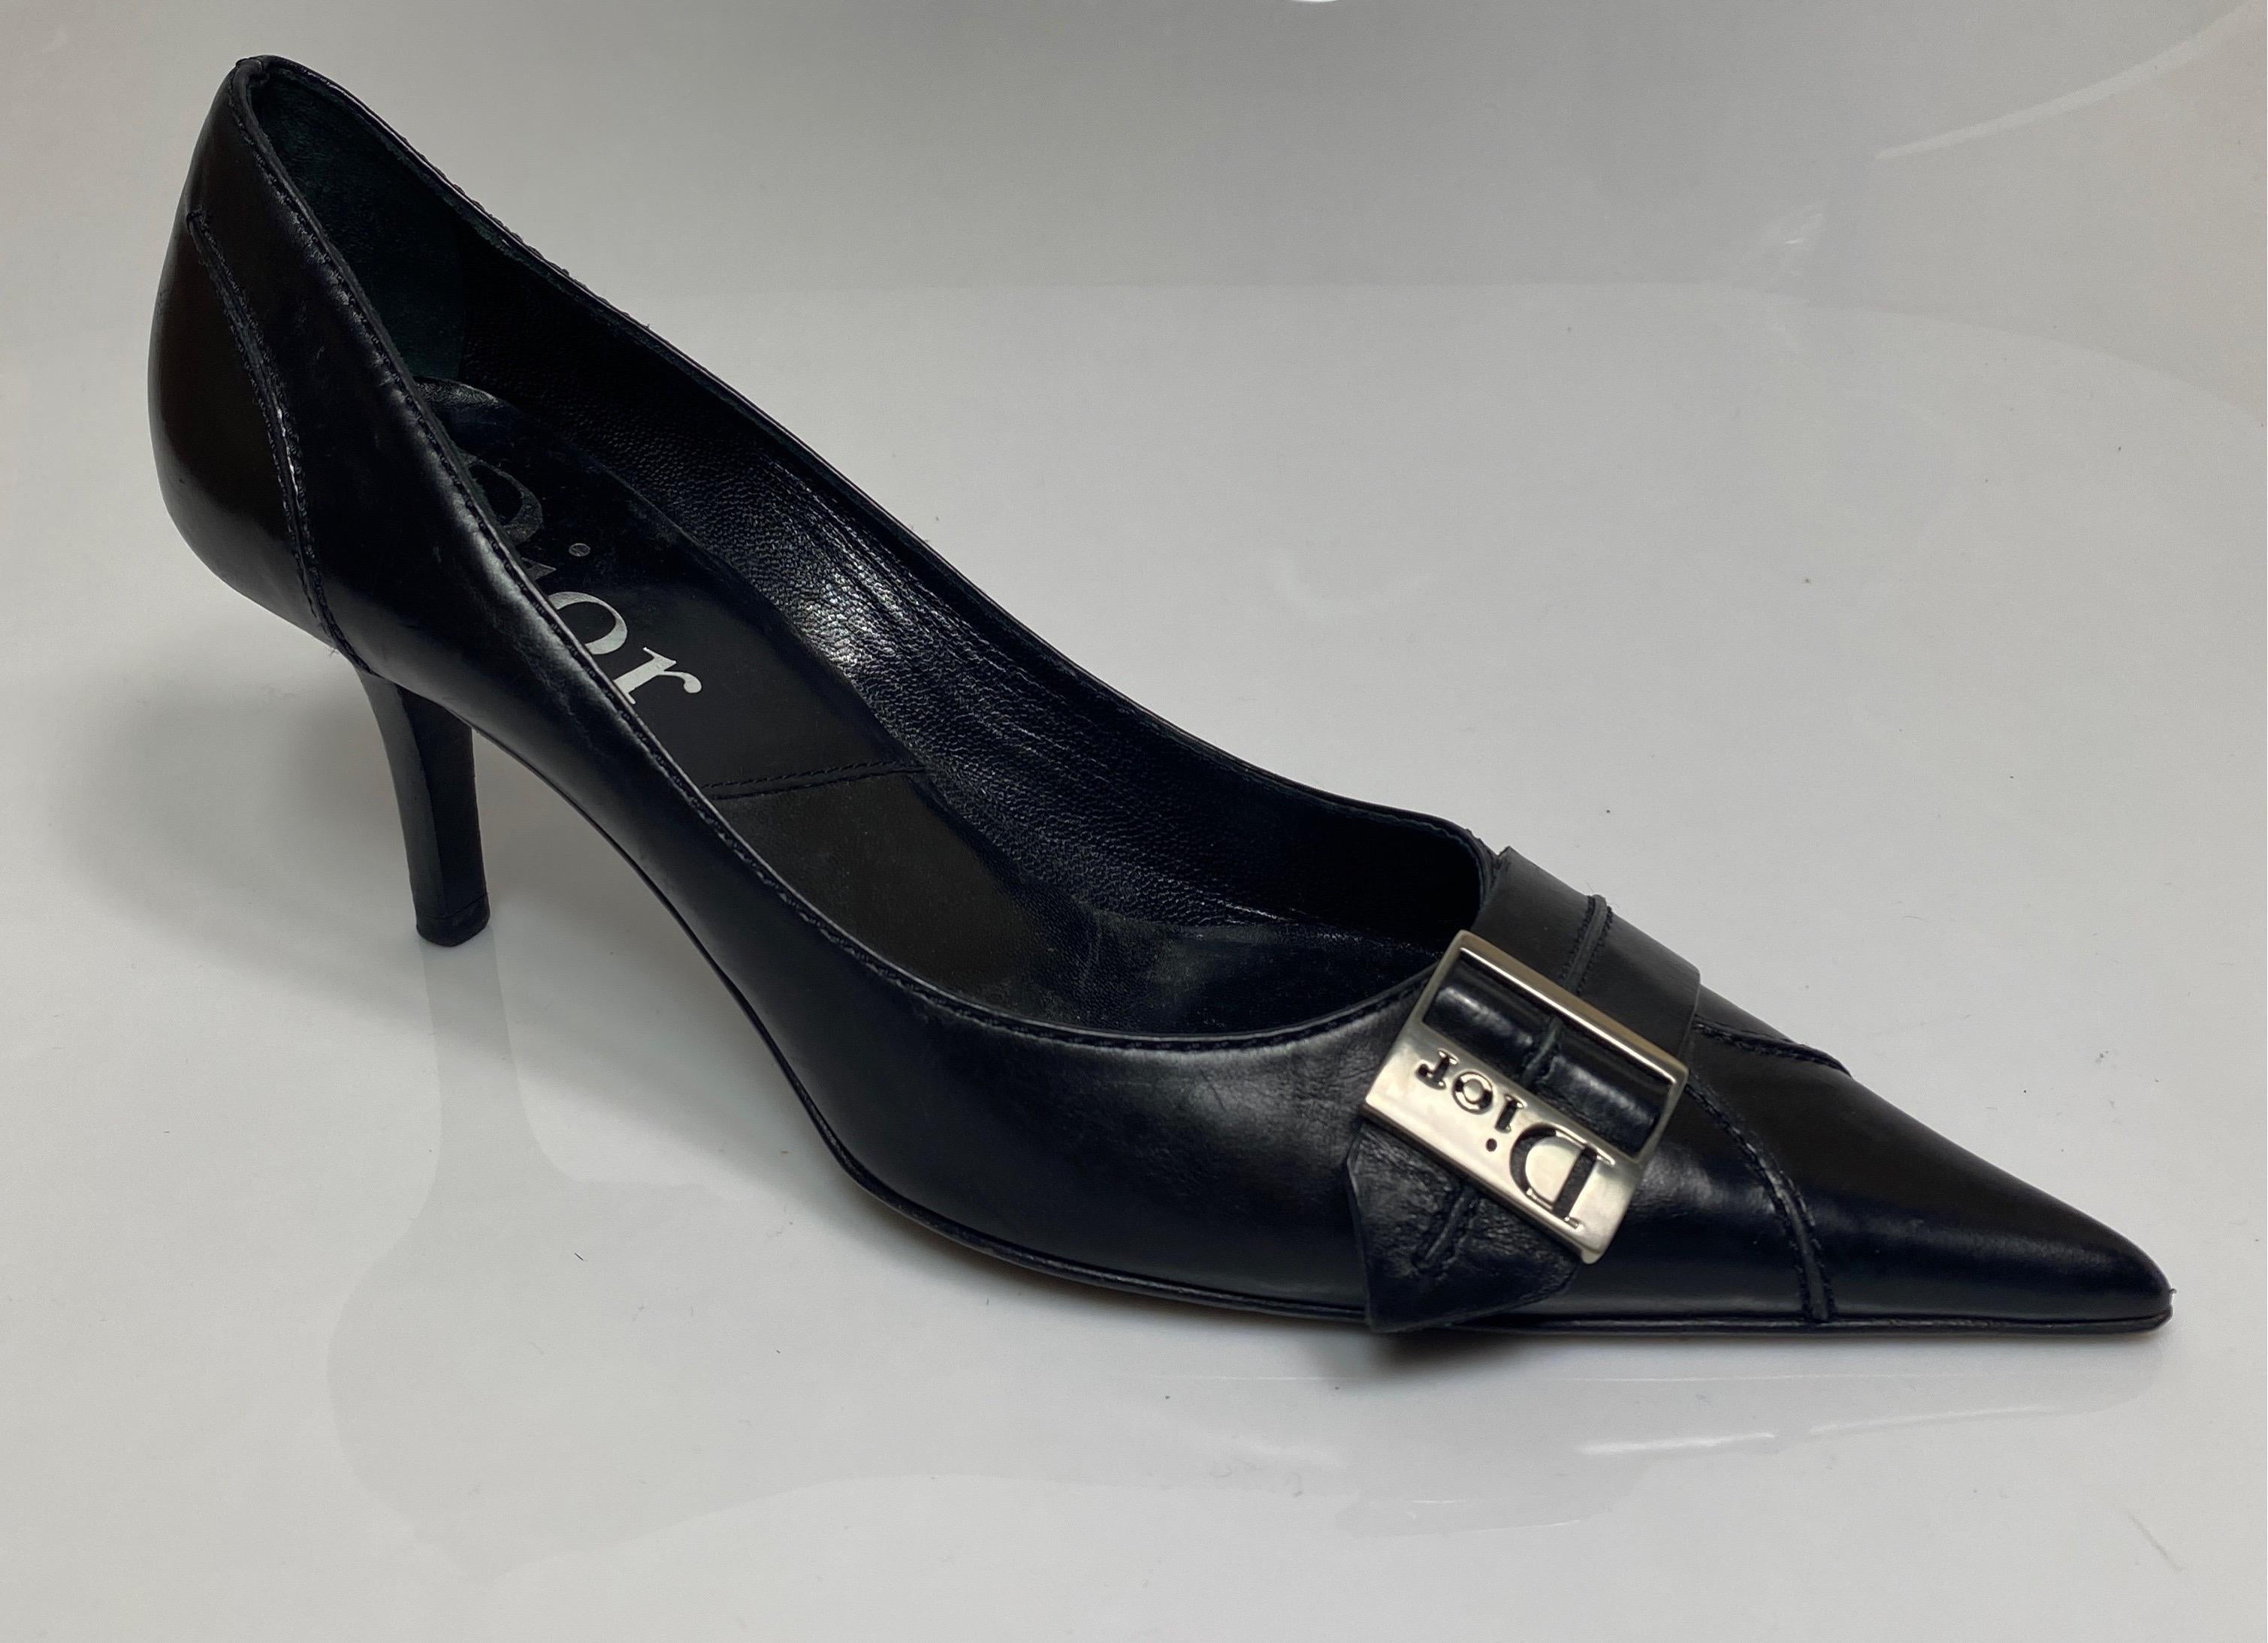 Christian Dior Vintage pompe en cuir noir avec boucle Dior argent - taille 37,5. Ces chaussures vintage sont du début des années 2000 et sont comme décrit :
Boîte à orteils pointue
1.25